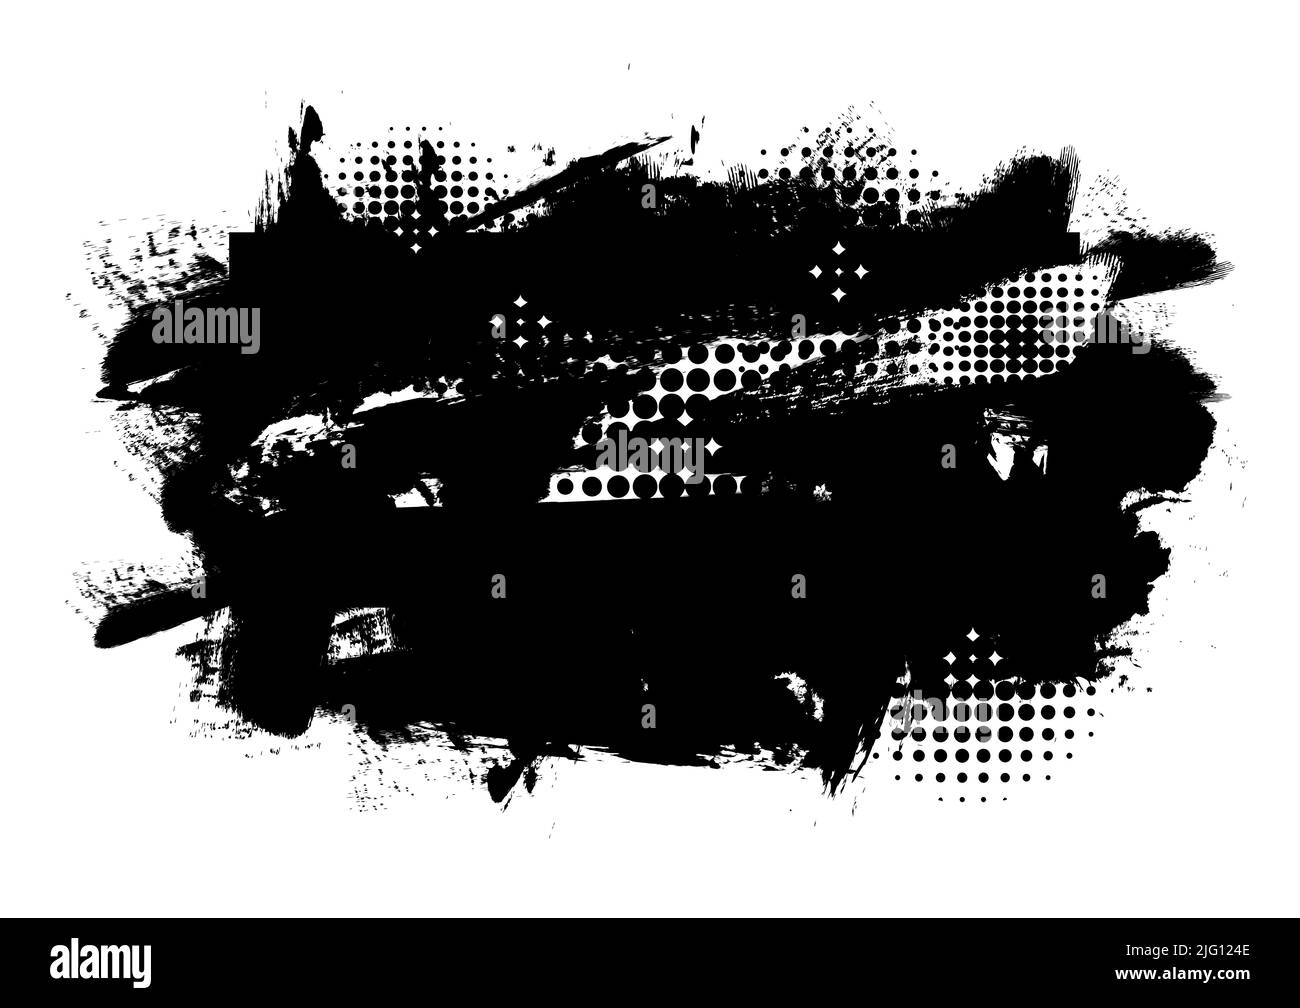 Abstrakt Hintergrund Textur schmutzige Farbe Banner Kunst Grafik Design Hintergrund Label Verkauf Förderung Präsentation Splash trendy Vektor Illustration Stock Vektor